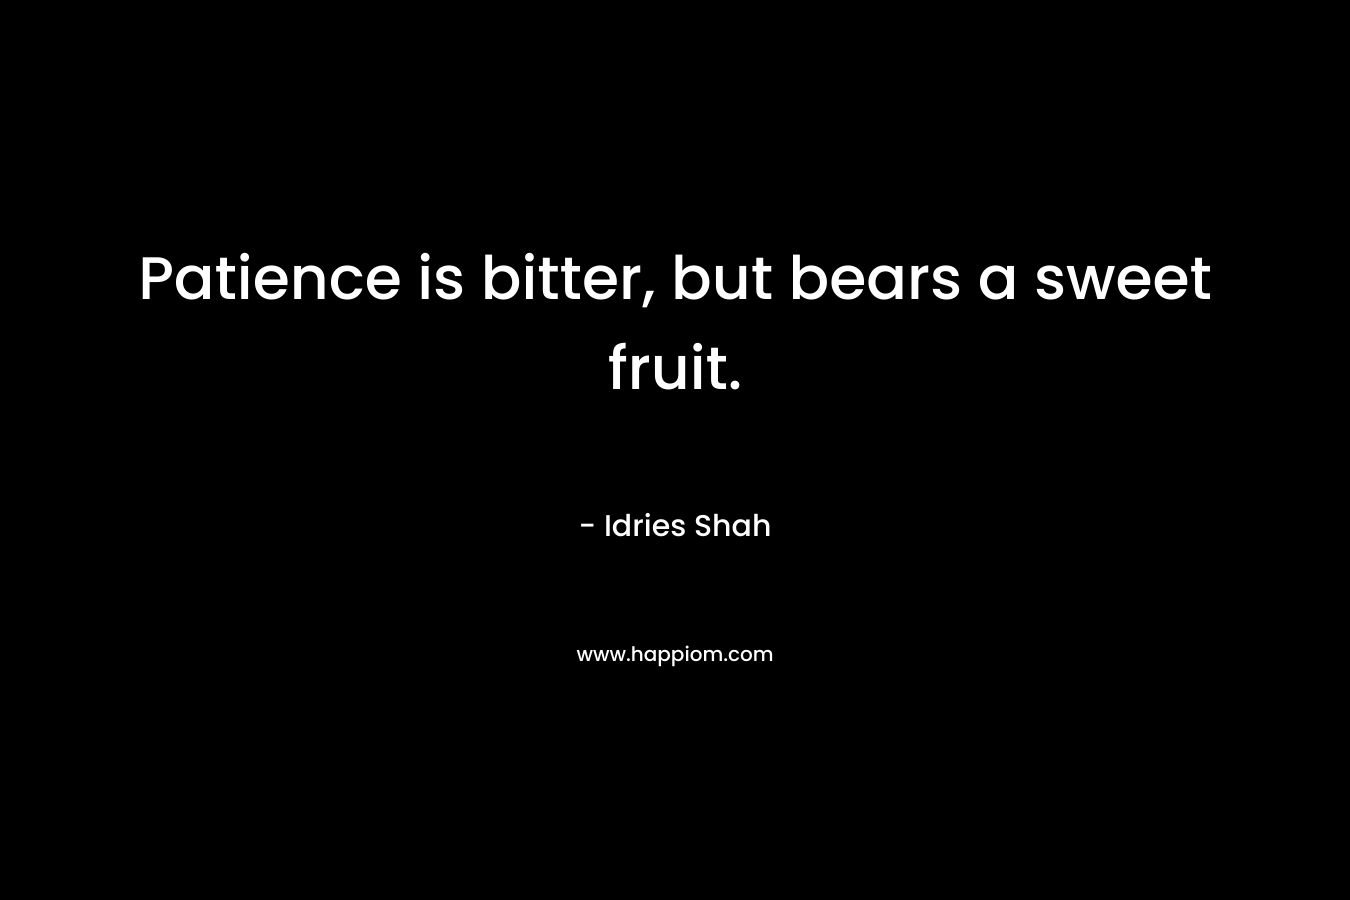 Patience is bitter, but bears a sweet fruit.